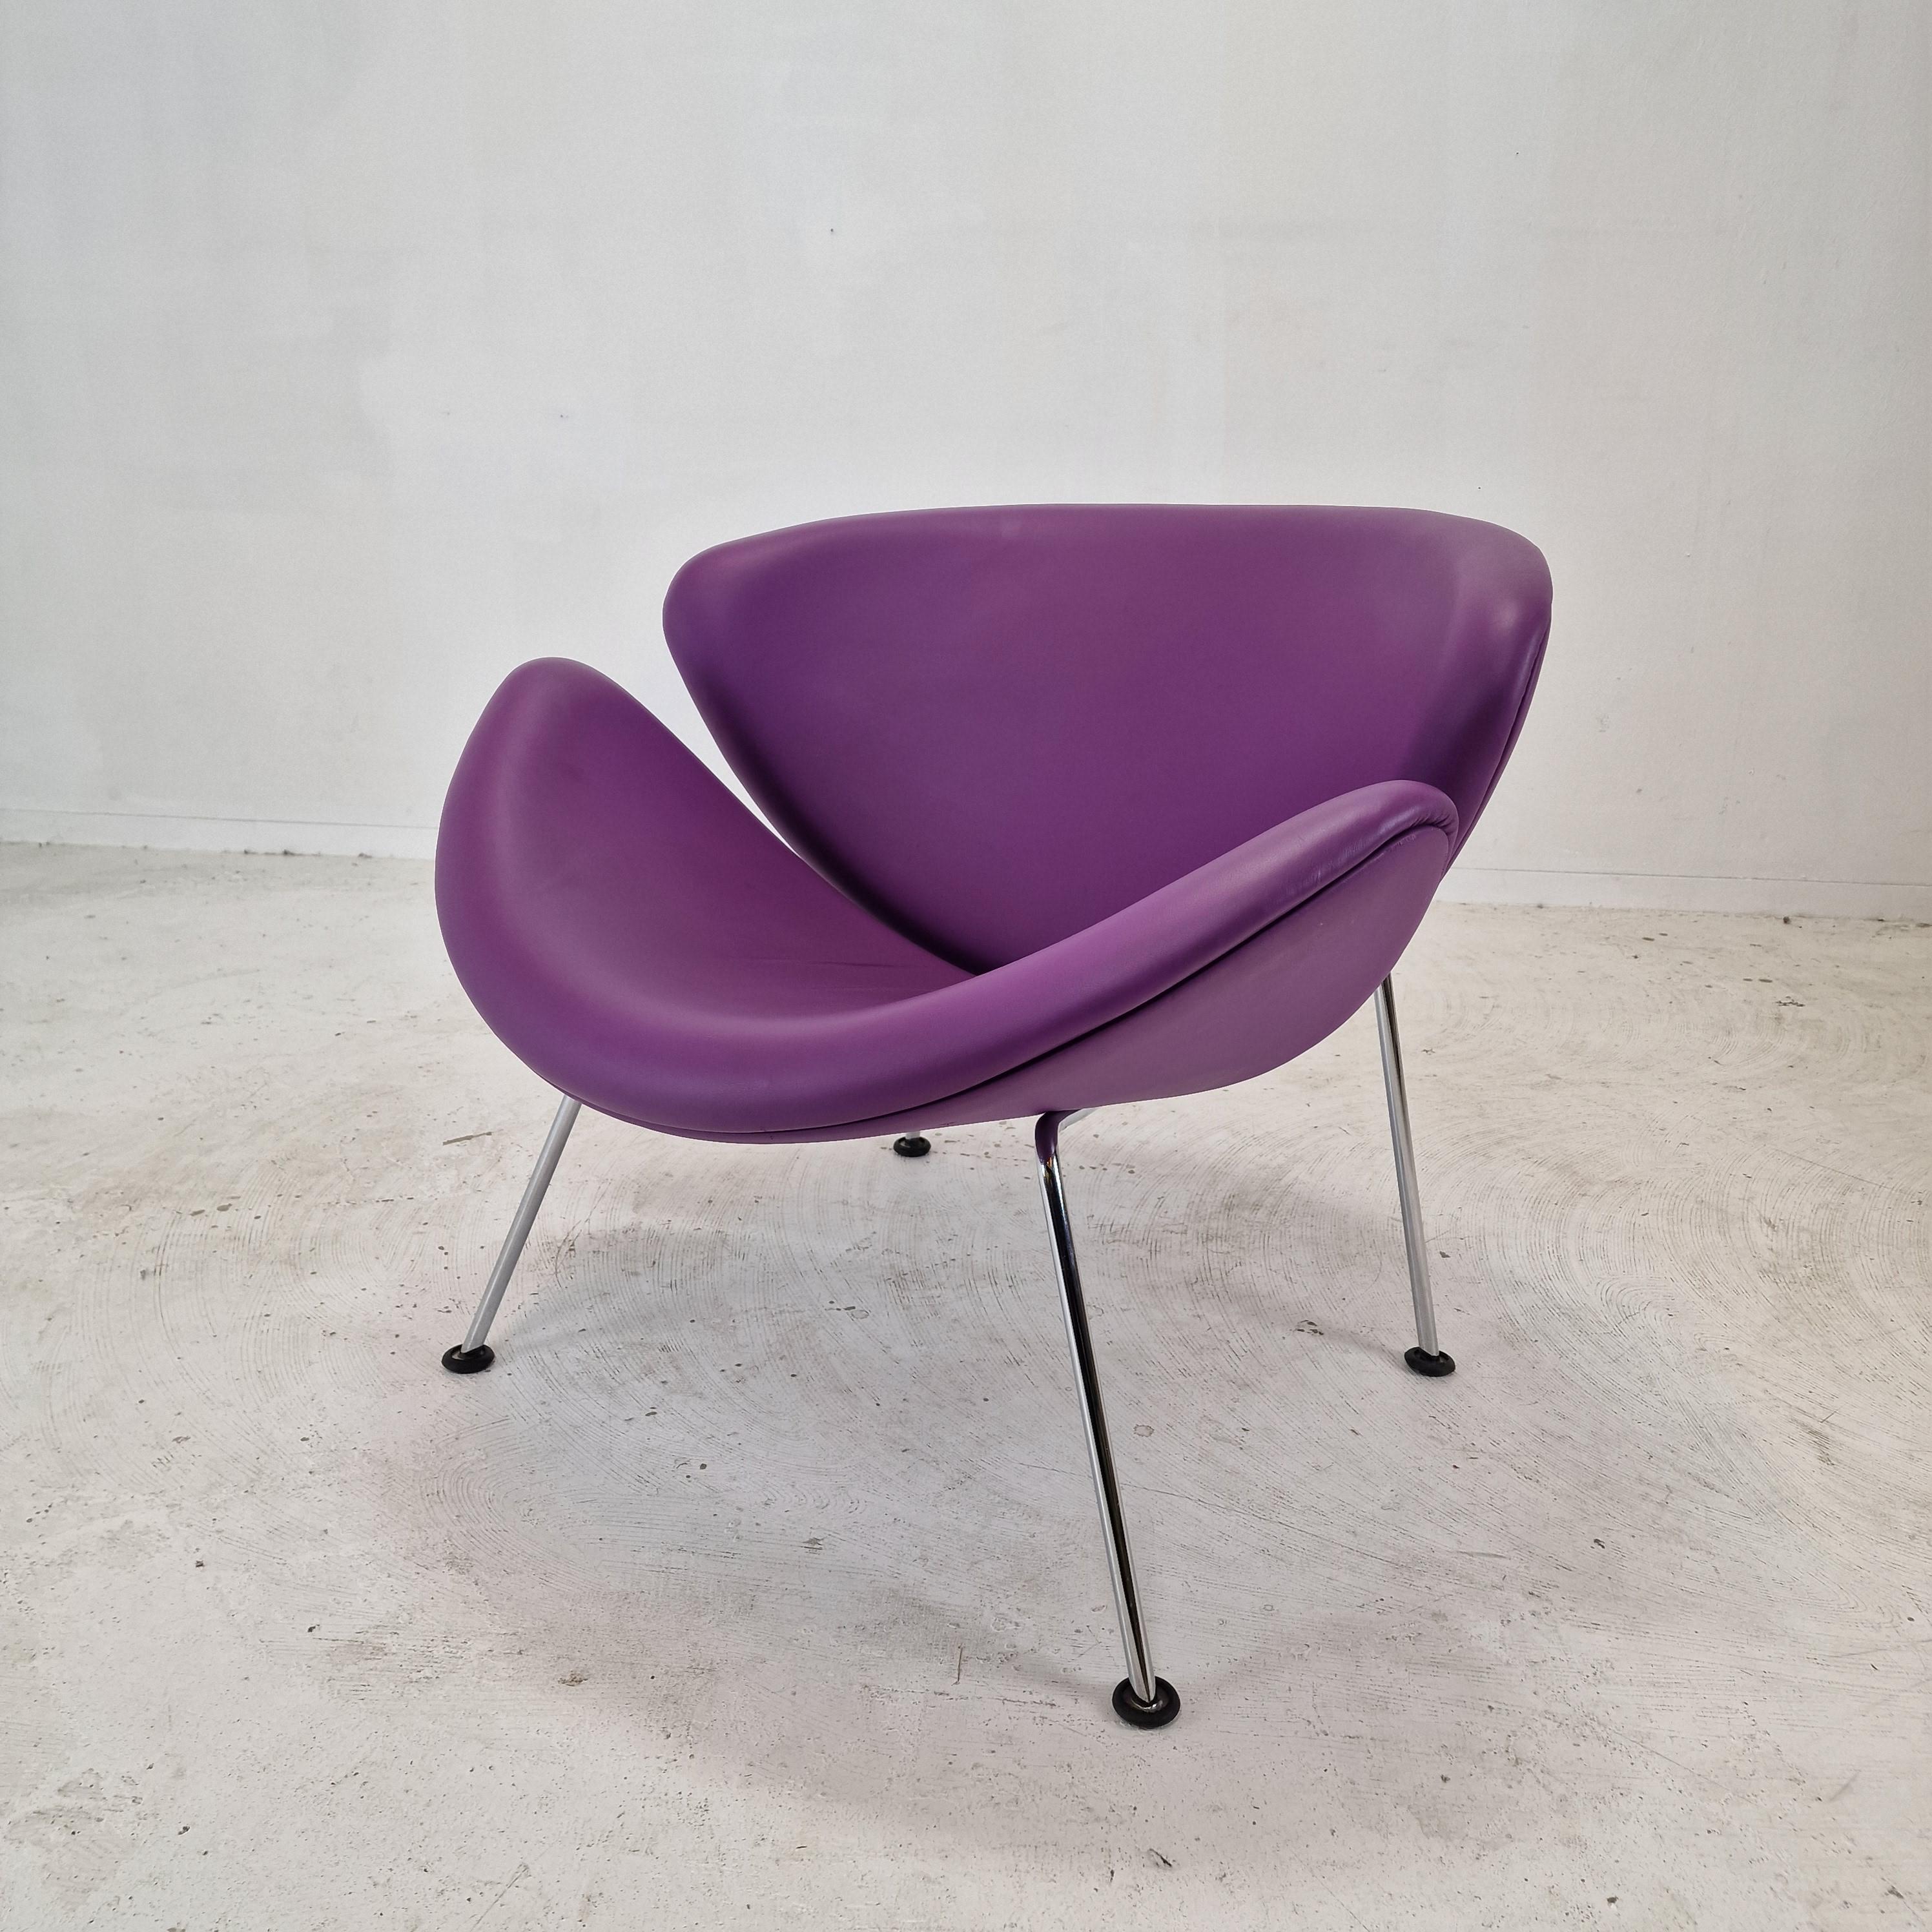 La célèbre chaise à tranches orange Artifort de Pierre Paulin, conçue dans les années 60.
Cette chaise originale aux pieds chromés a été produite dans les années 80.

C'est une chaise mignonne et très confortable.

Il est doté d'un cuir d'origine de